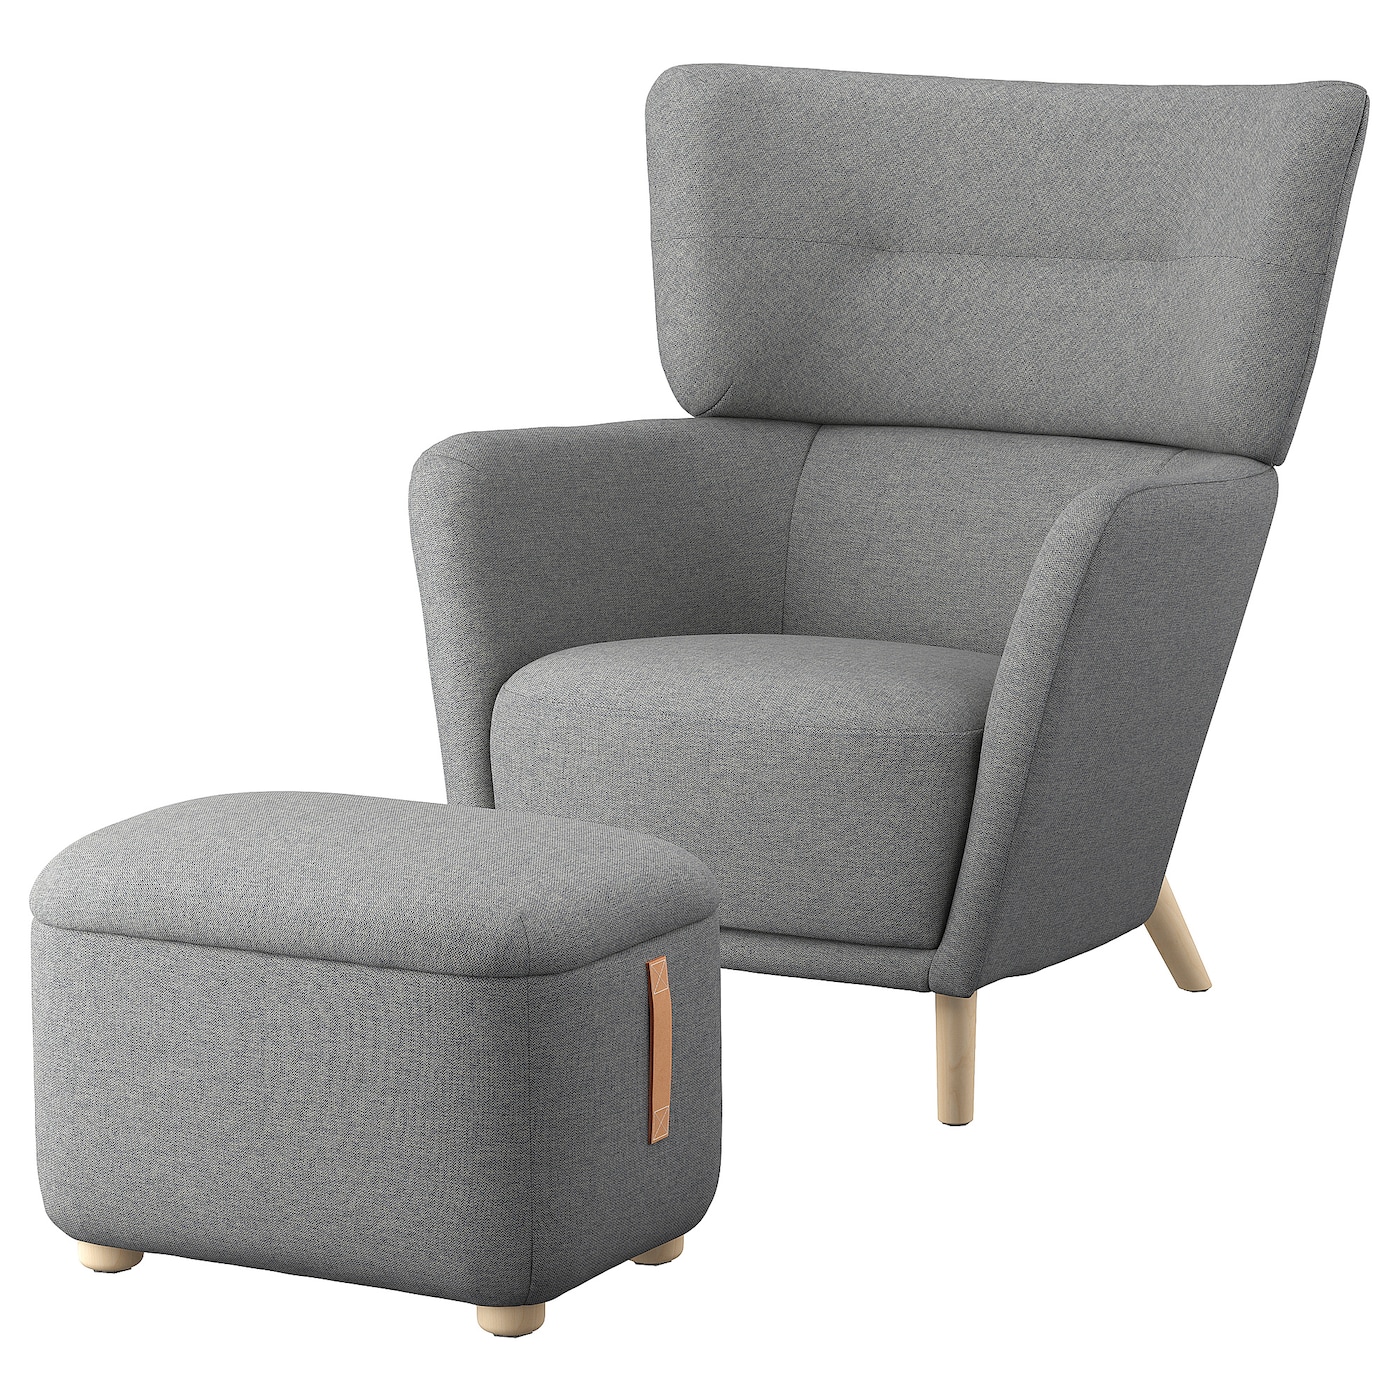 ОСКАРШАМН Кресло и подставка для ног, Тибблби бежевый/серый OSKARSHAMN IKEA